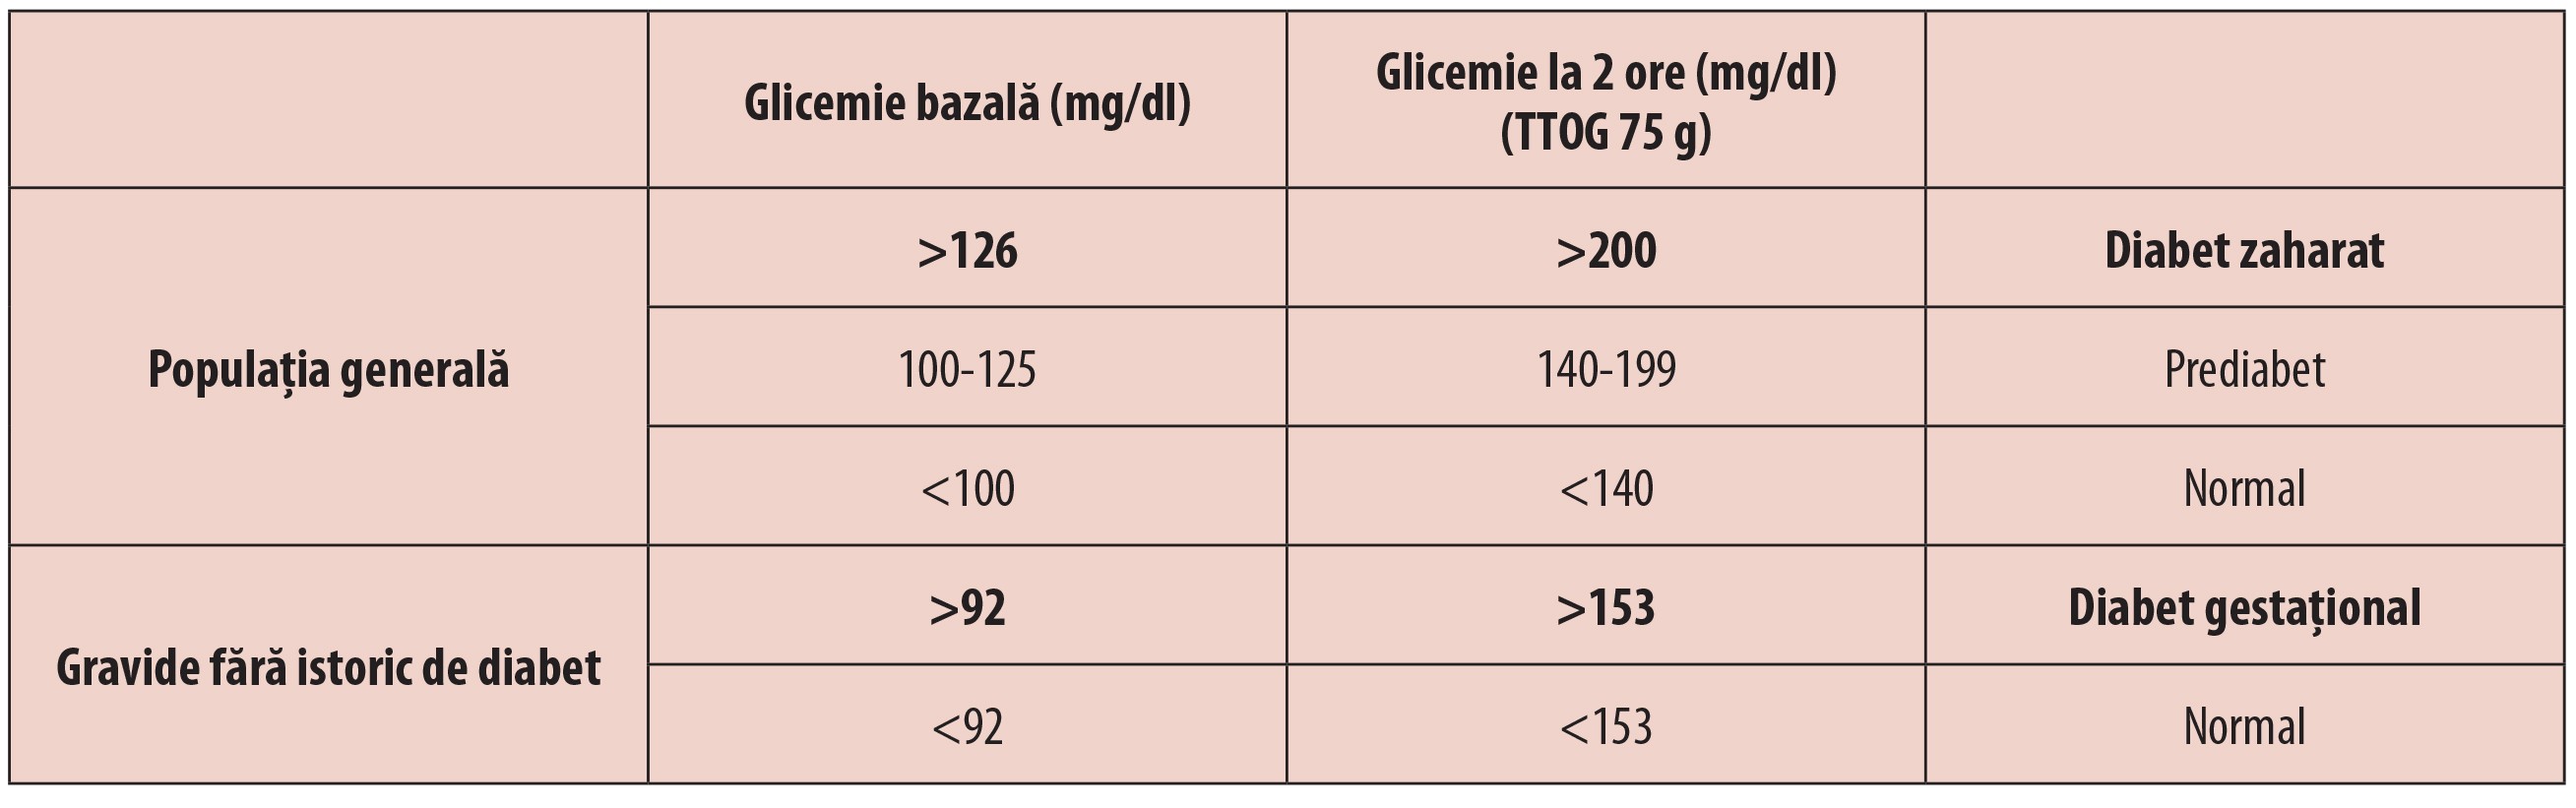 Tabelul 1; Criteriile OMS și ADA de diagnostic al diabetului zaharat și al diabetului gestațional  pe baza valorilor glicemiilor